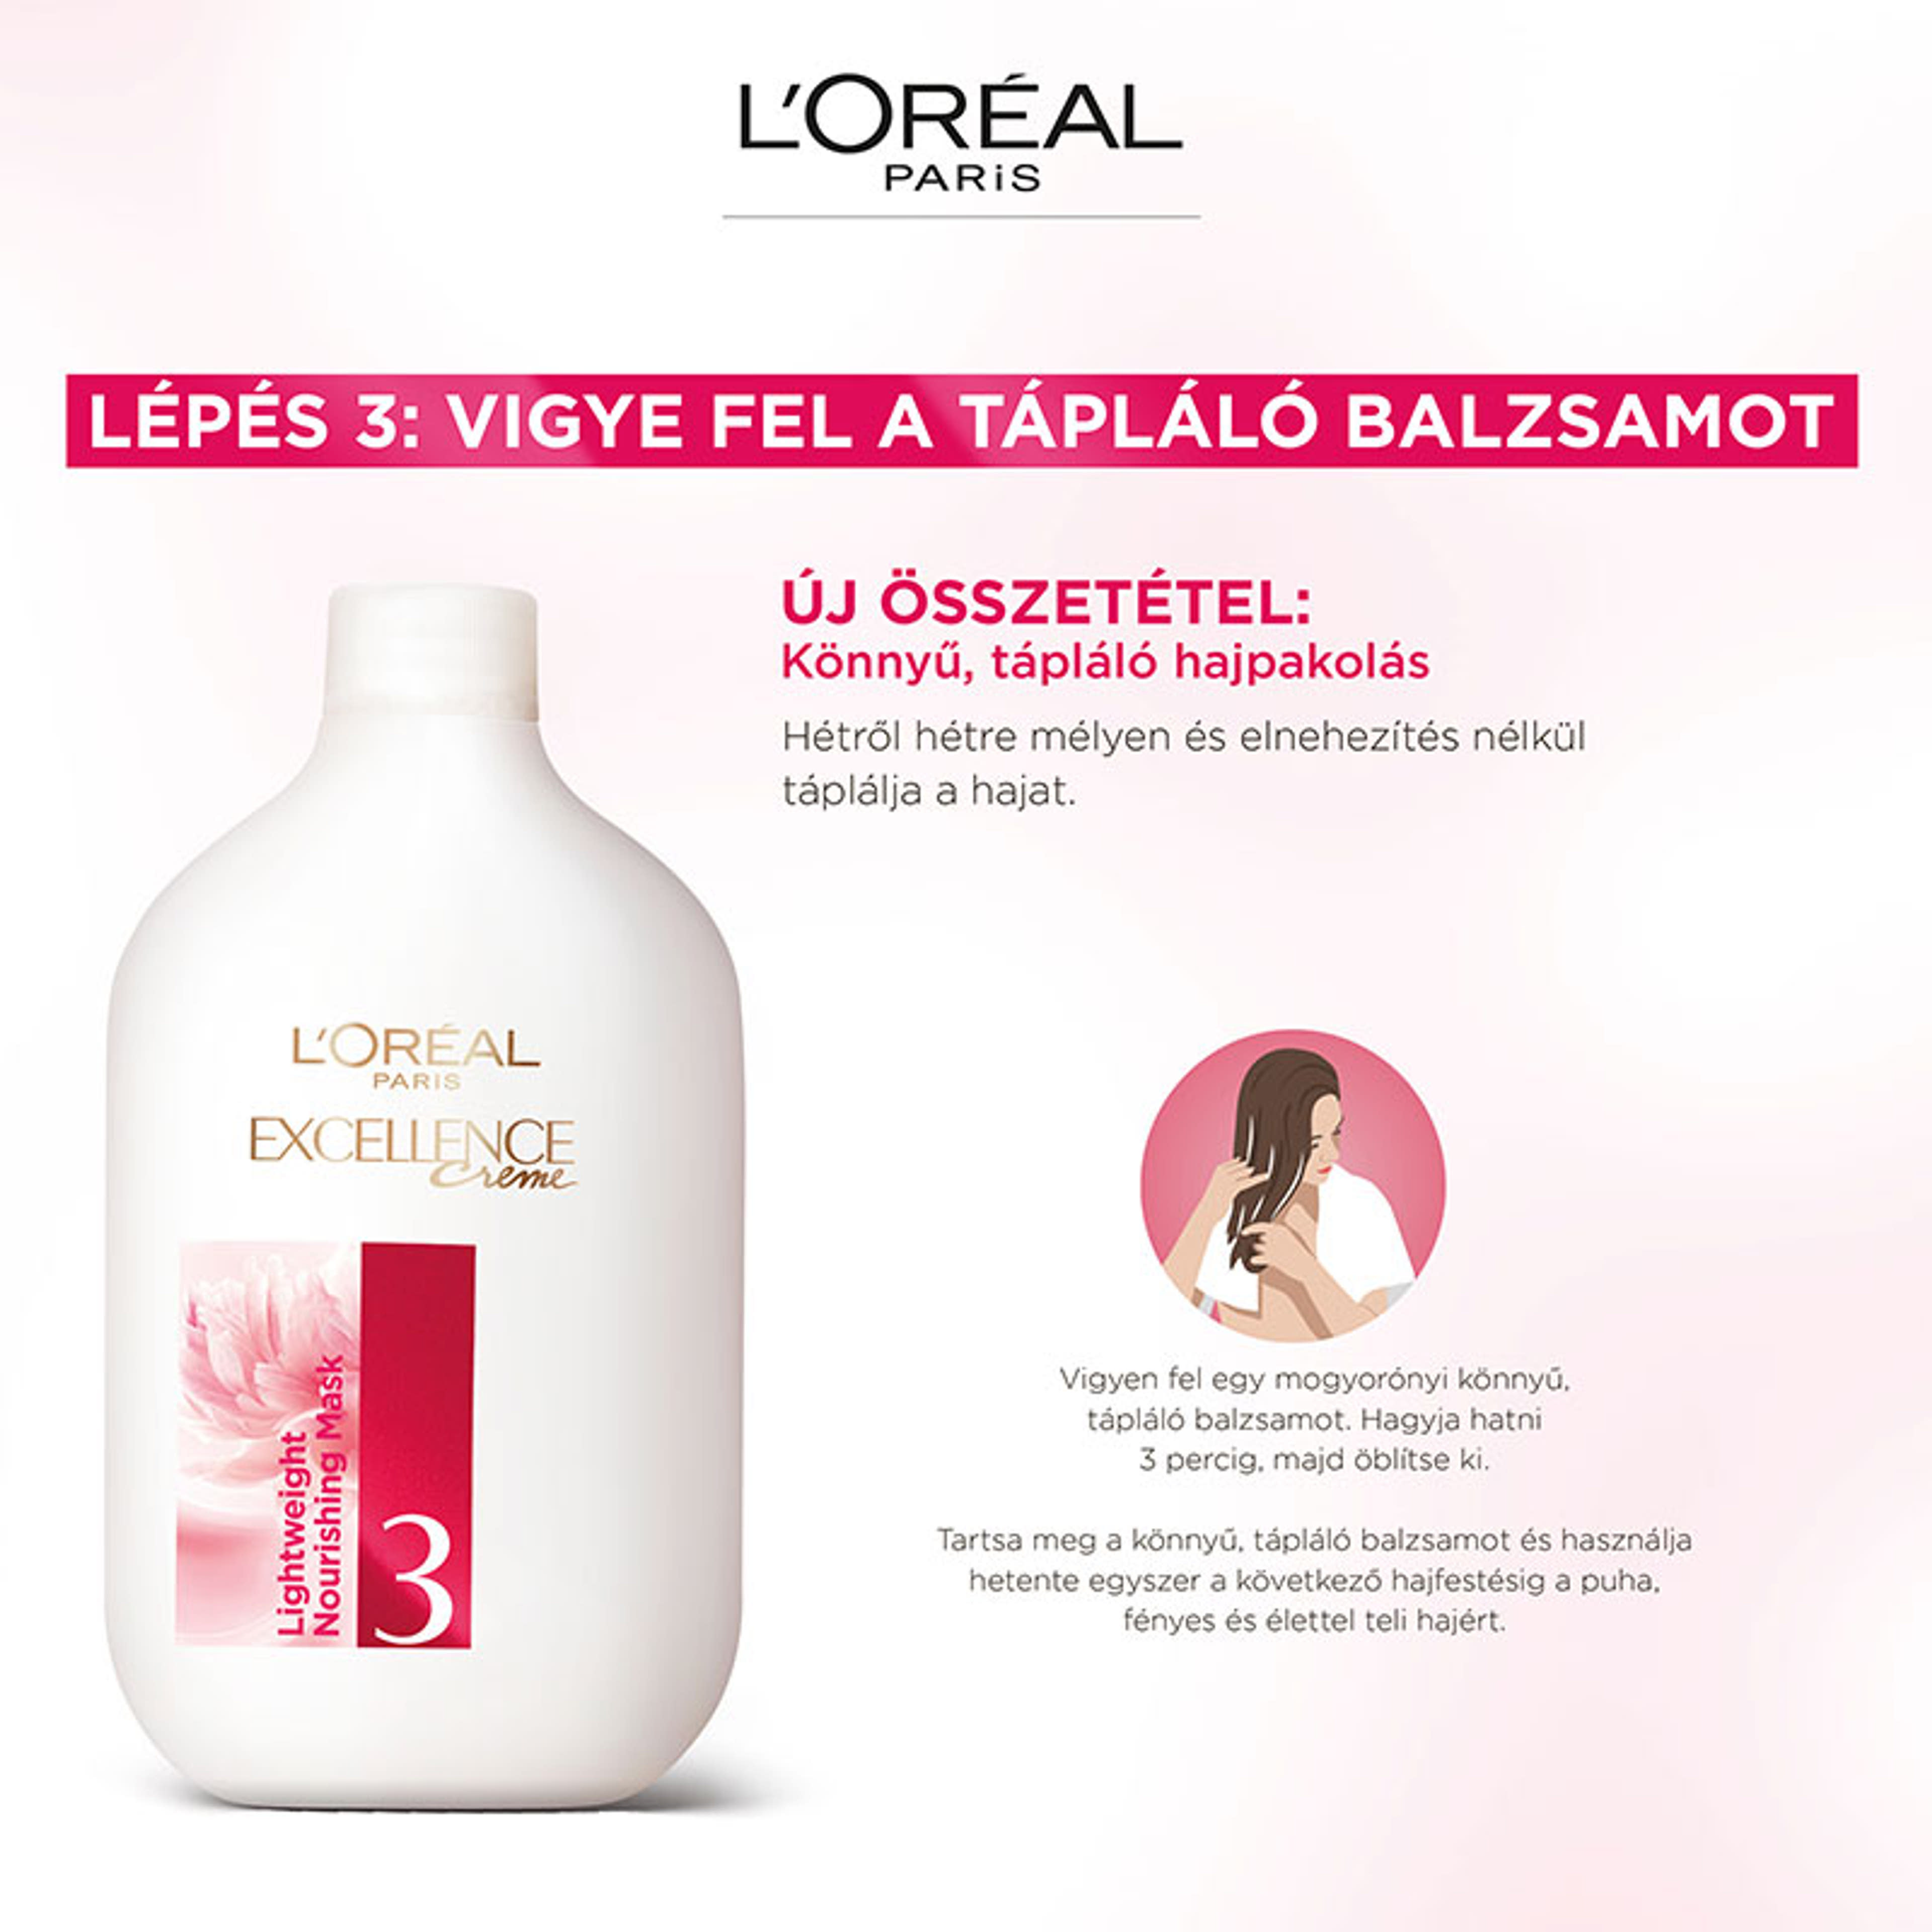 L'Oréal Paris Excellence krémes, tartós hajfesték 6.1 sötét hamvasszőke - 1 db-11